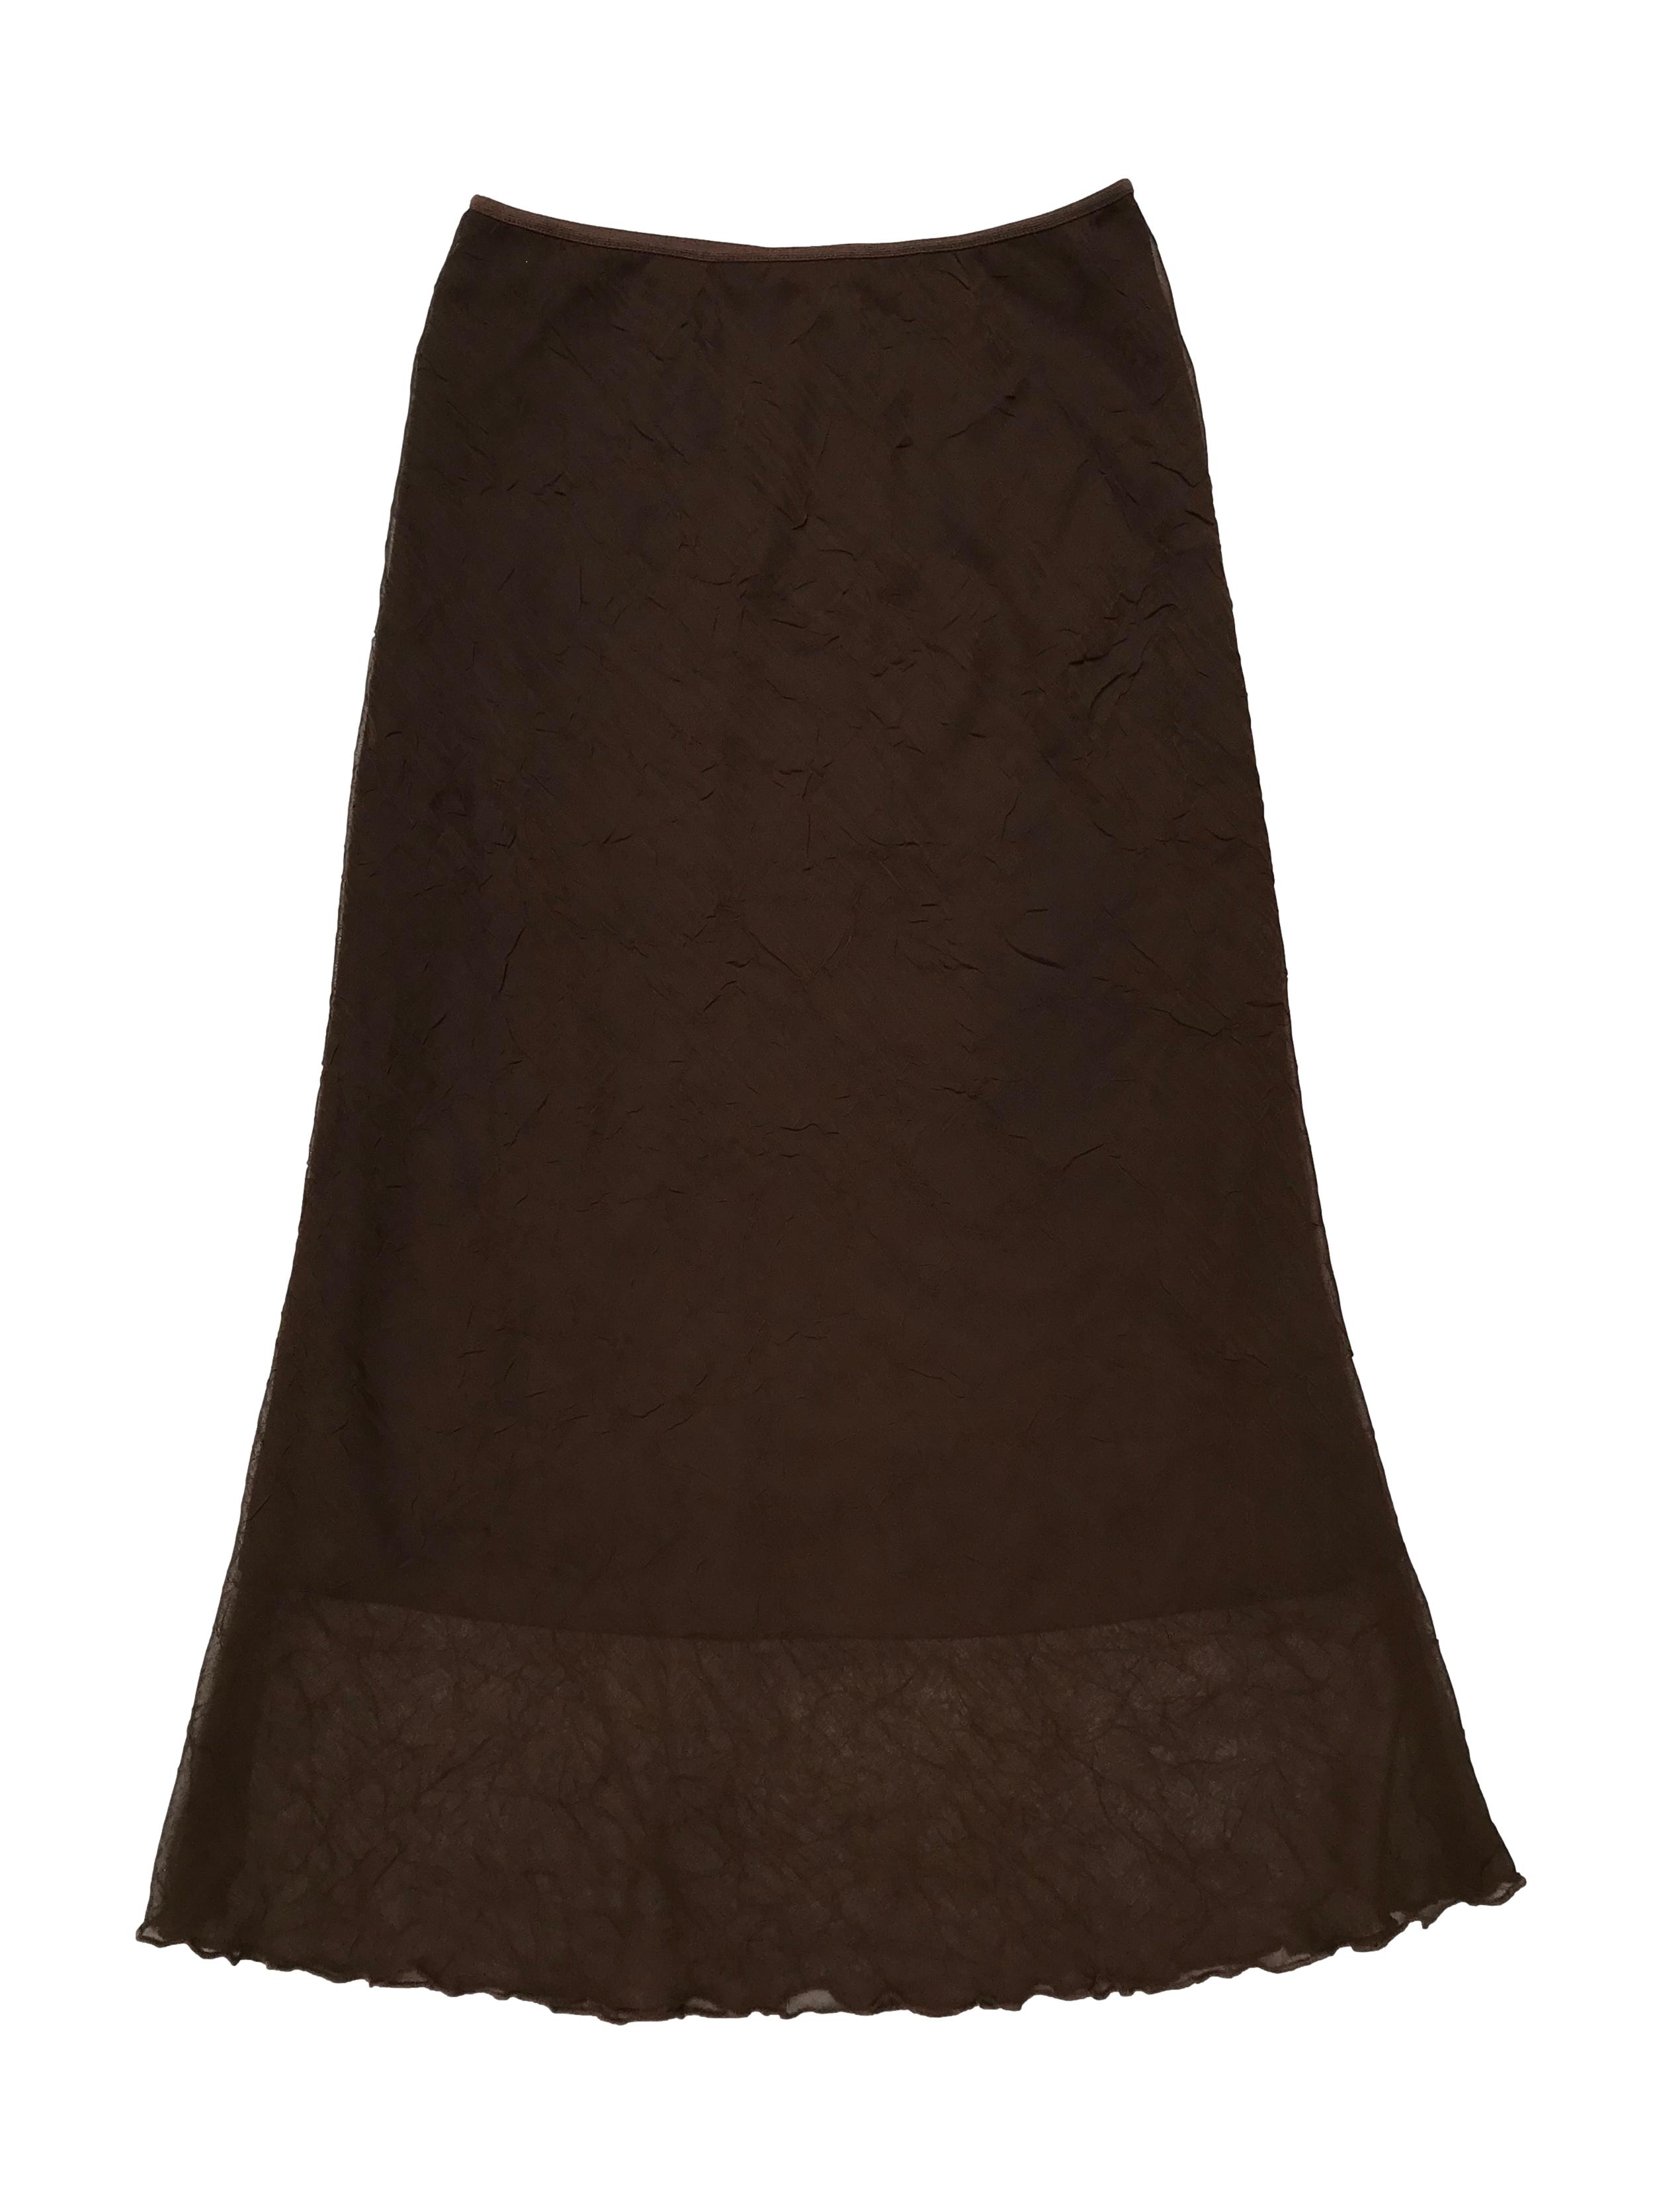 Falda midi Company de gasa con textura, forrada, con elástico en la cintura. Largo 78cm